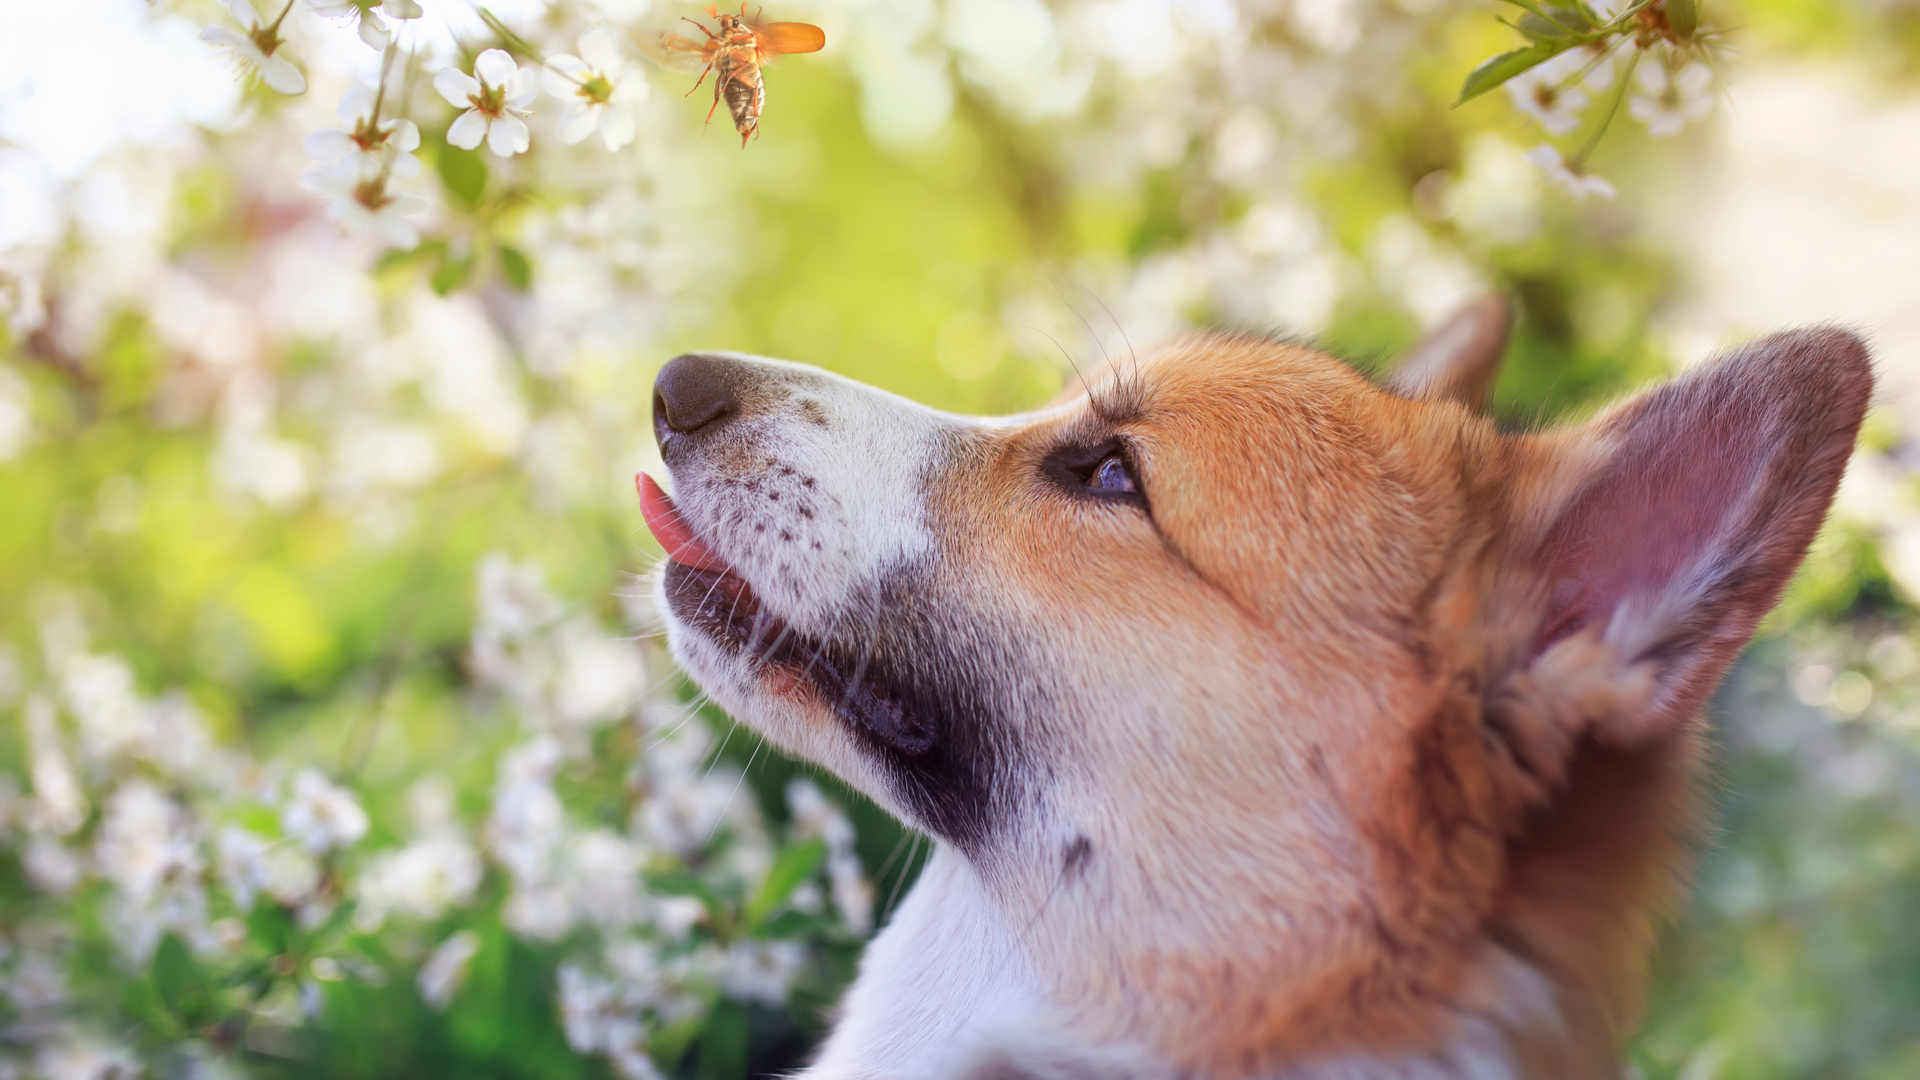 Picadas de insetos podem desenvolver diversas doenças e reações alérgicas em cães e gatos. | Foto: Shutterstock